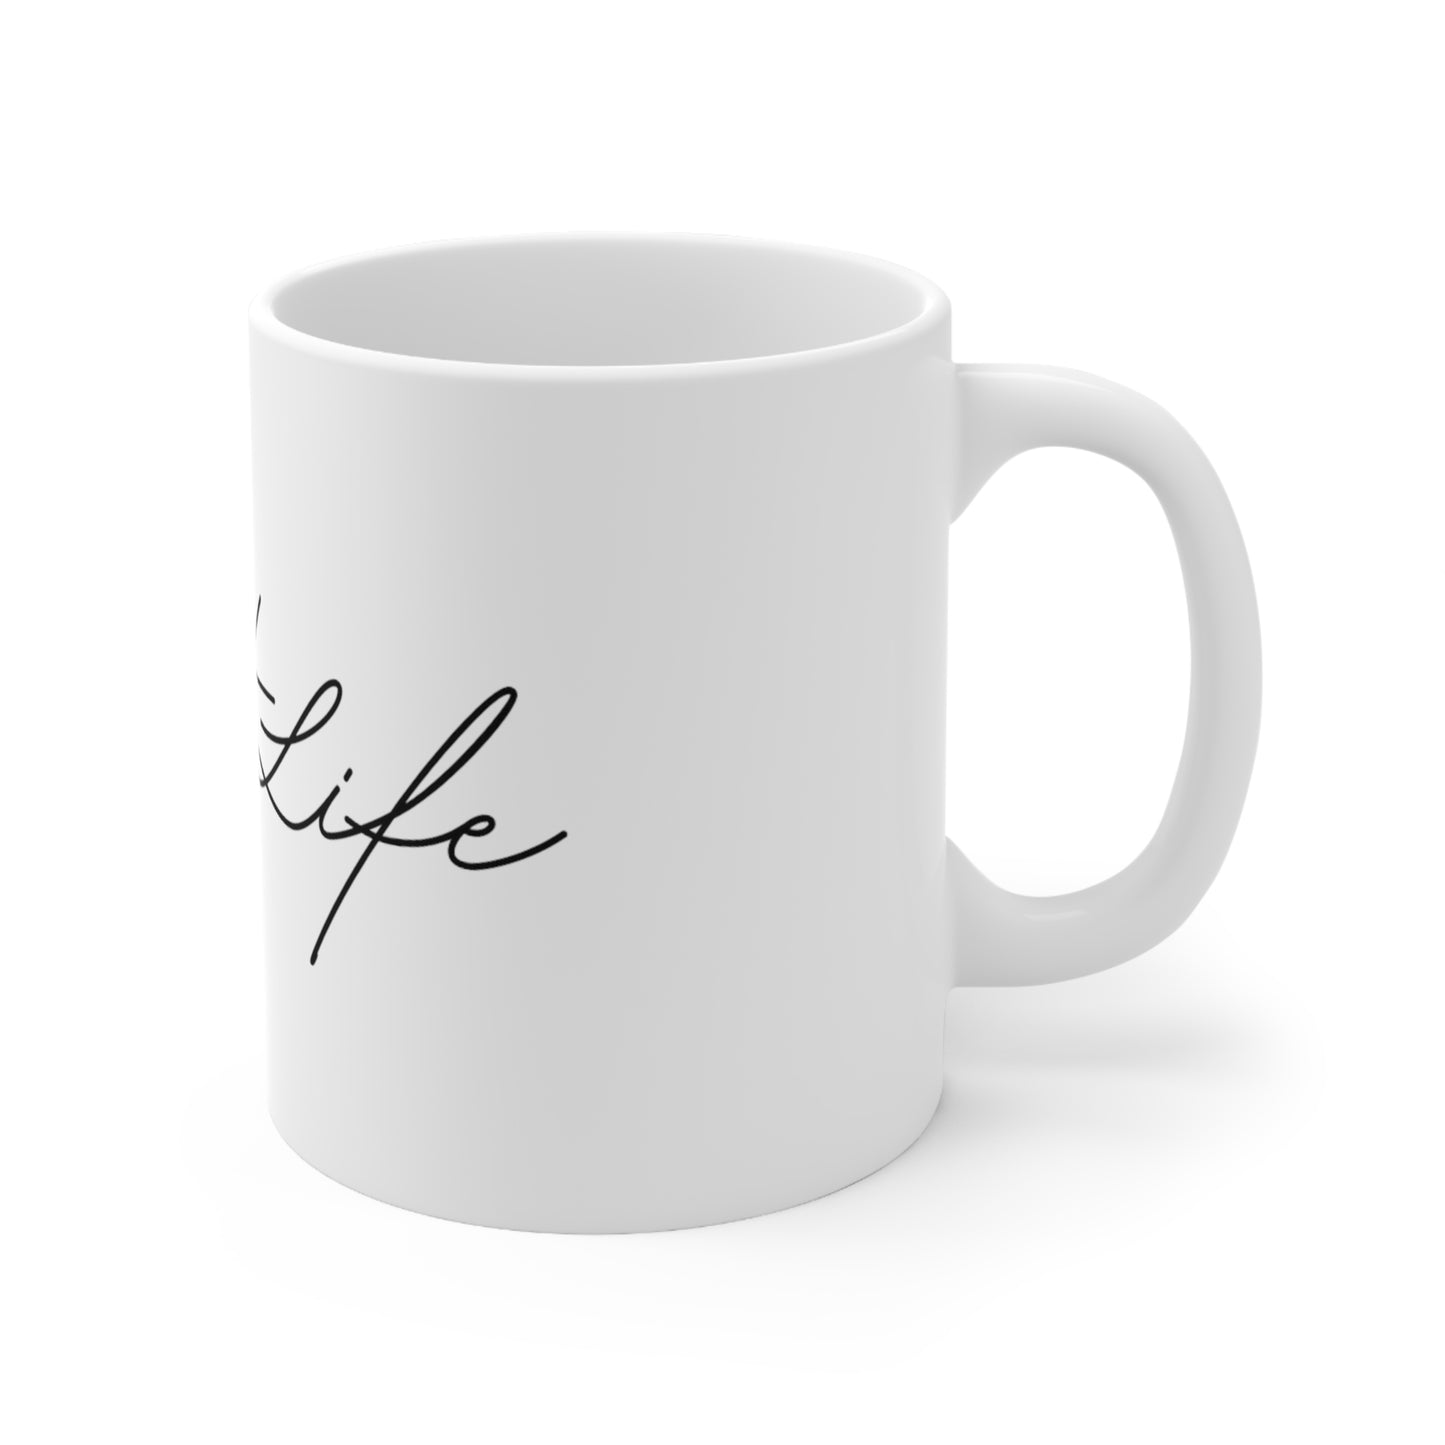 #Soft Life Ceramic Mug 11oz